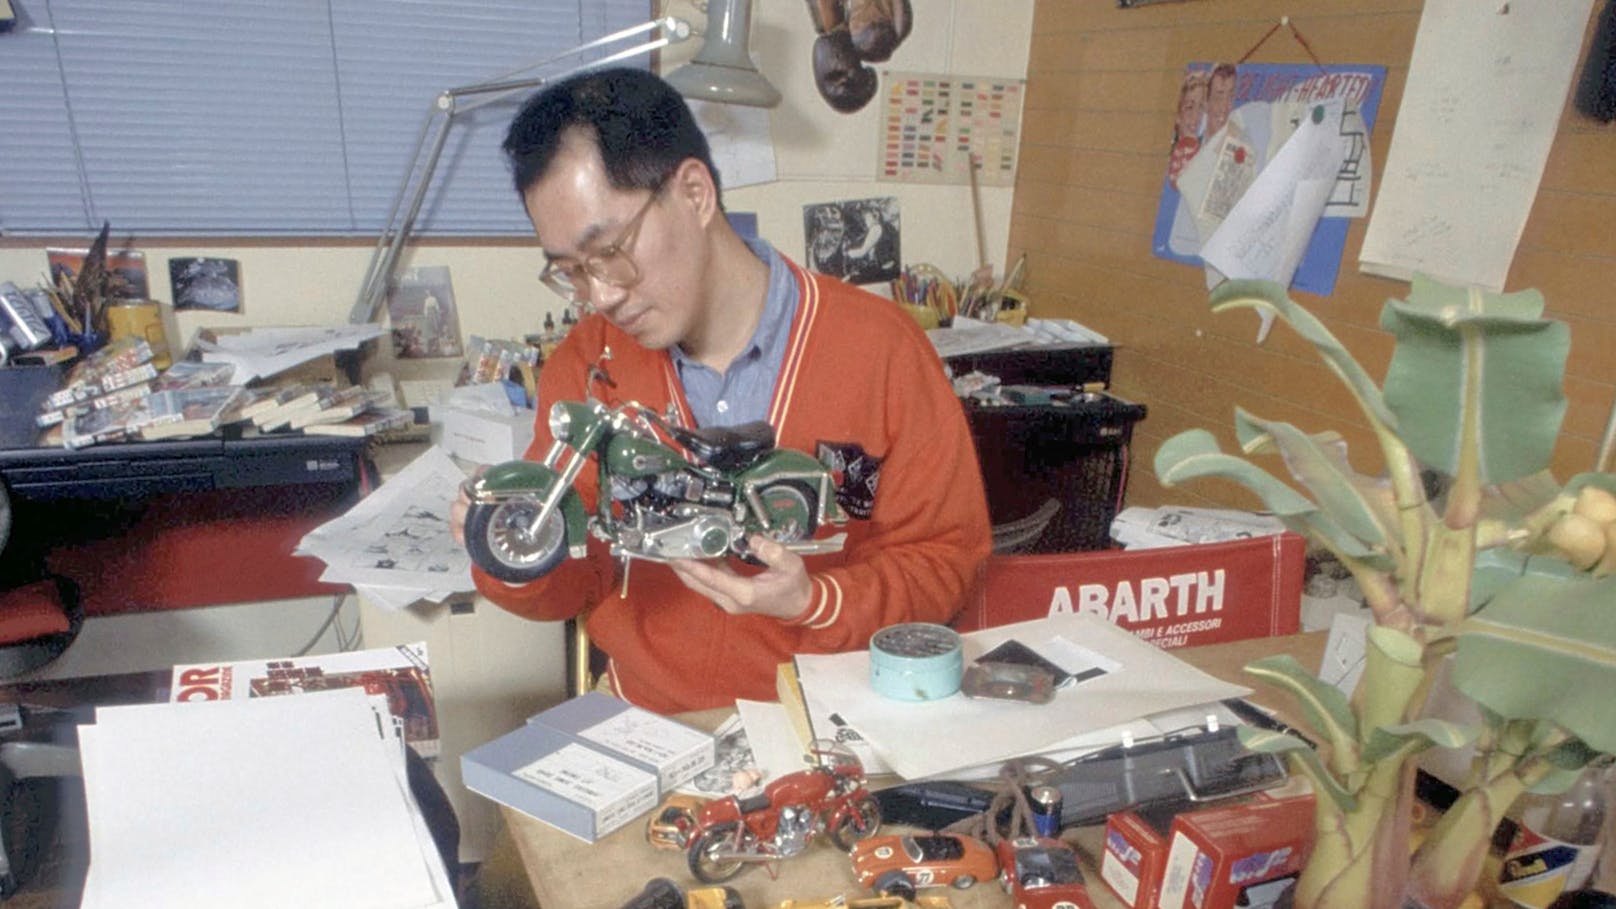 Der japanische Manga-Zeichner Akria Toriyama galt als medienscheu. Das Archivfoto zeigt ihn in der Stadt Kiyosu im Jahr 1988.